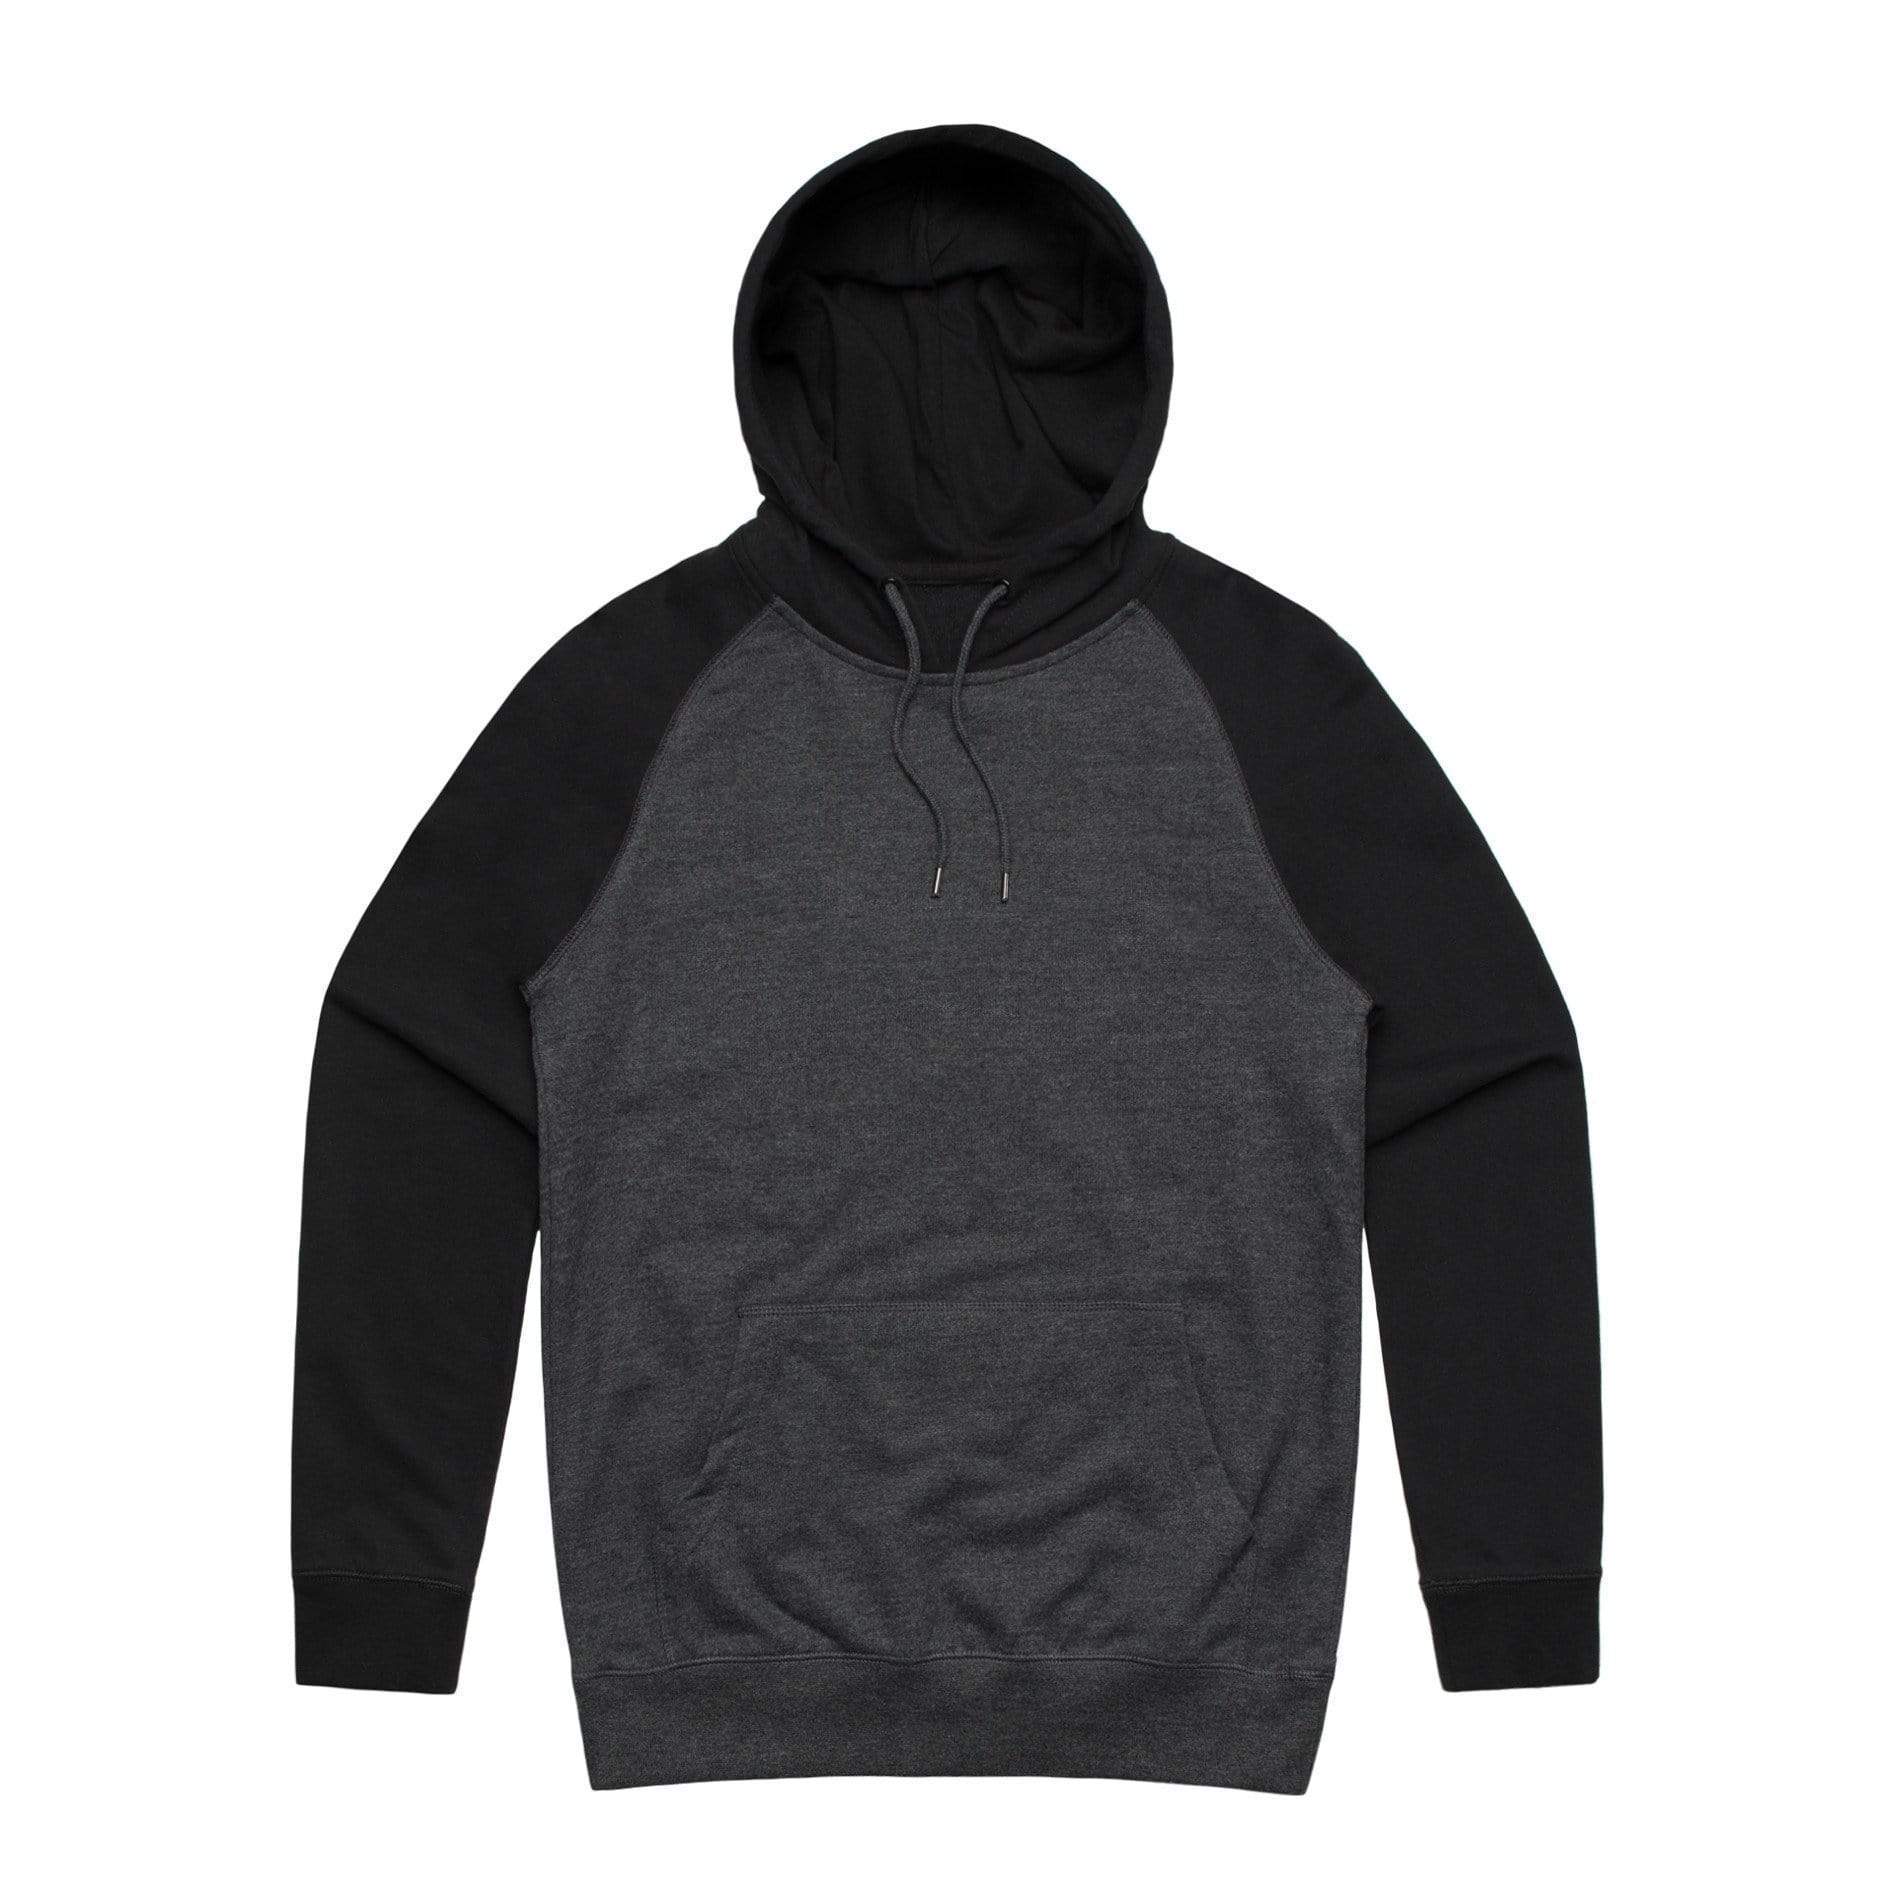 As Colour Men's case hoodie 5205 Casual Wear As Colour ASPHALT MARLE/BLACK XSM 